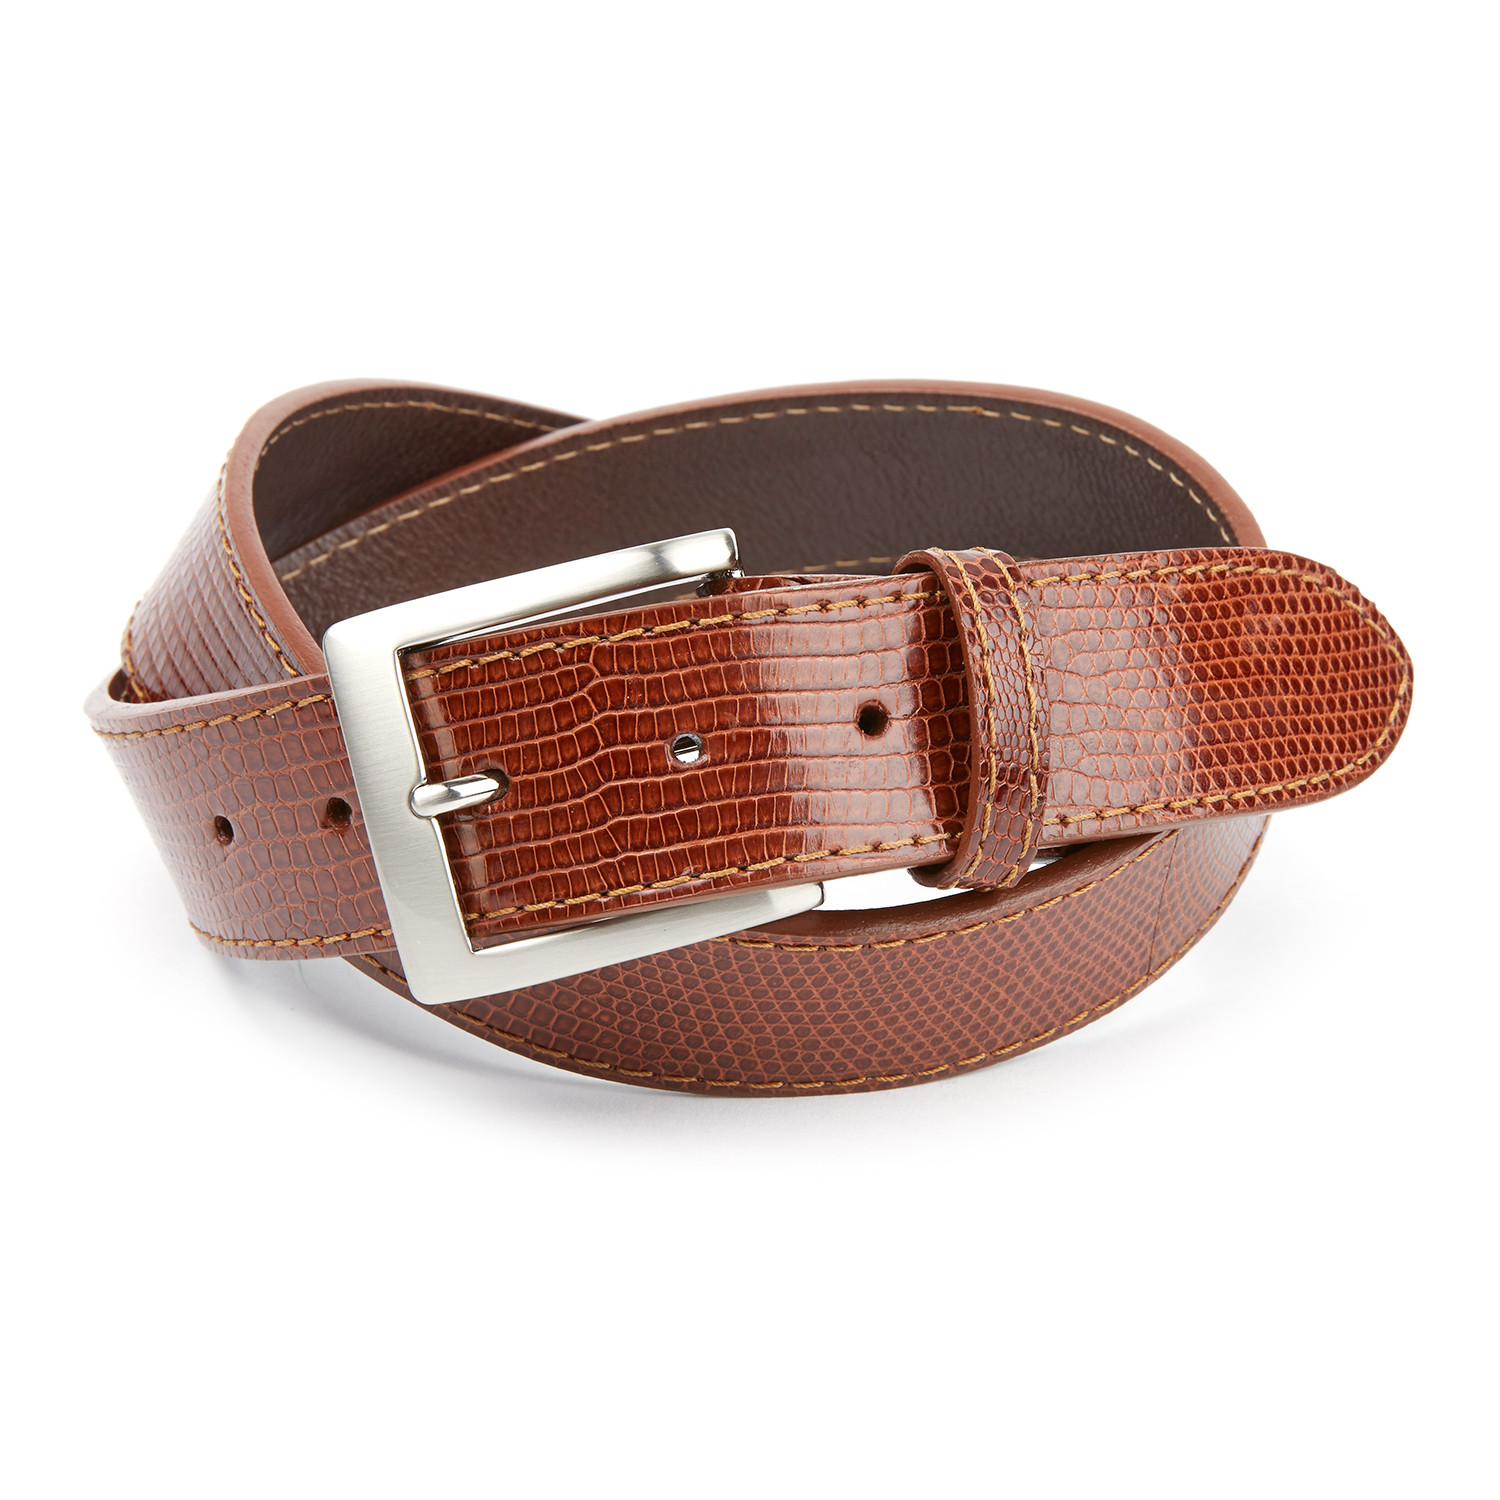 Gibbons Handmade - Men's Belts – Patrick Gibbons Handmade